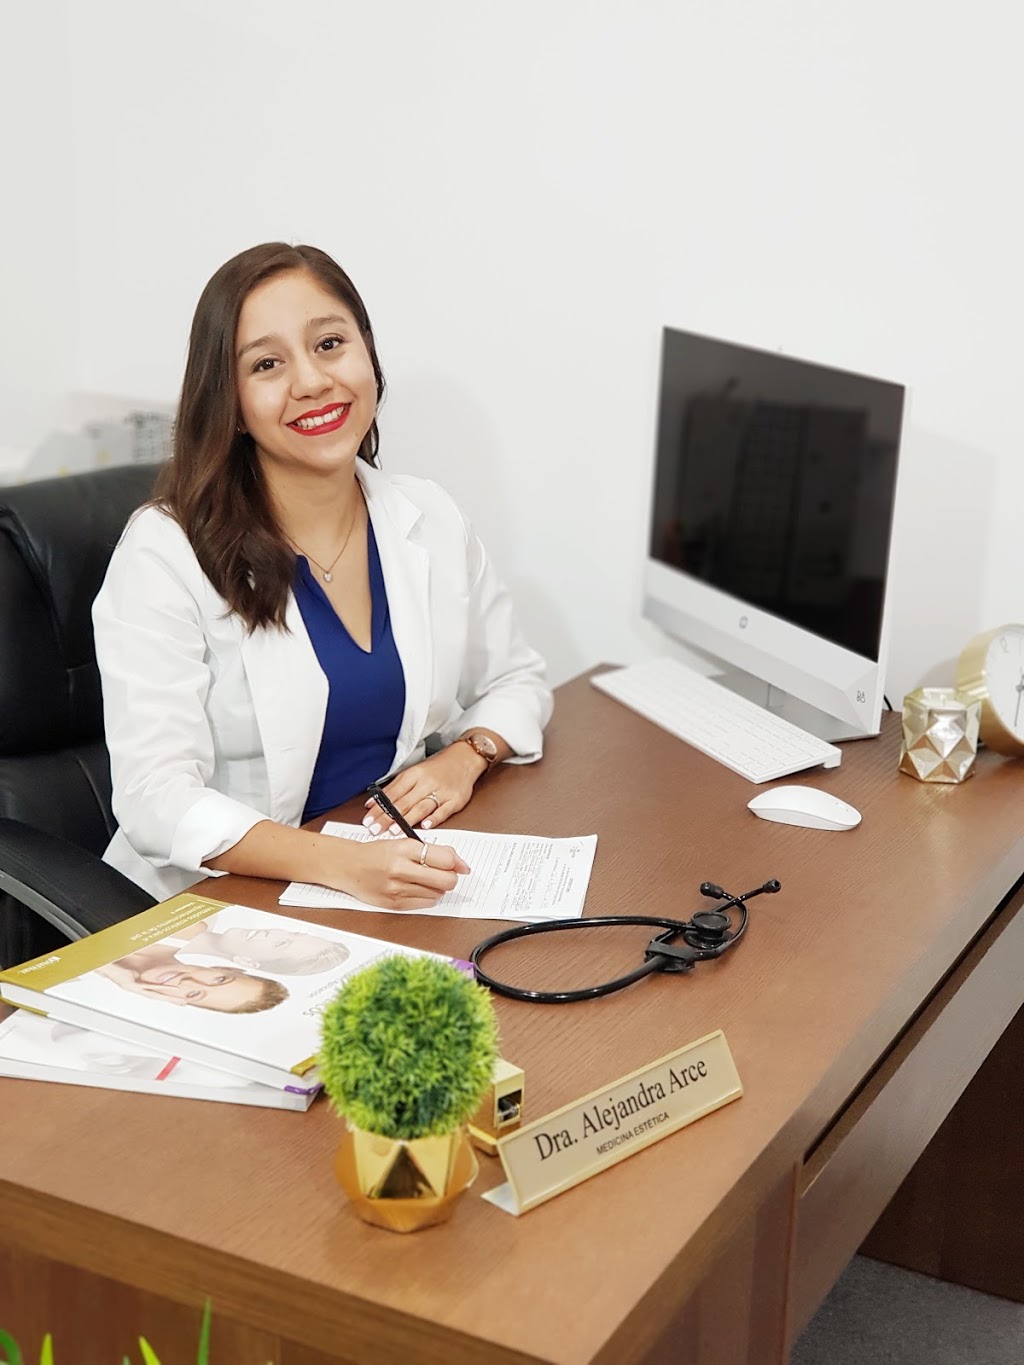 Dra. Alejandra Arce Aesthetic Medicine & Hair clinic | Consultorio #732 Hospital, StarMédica, Av. Paseo de la Victoria #4370, 32618 Cd Juárez, Chih., Mexico | Phone: 656 133 5922